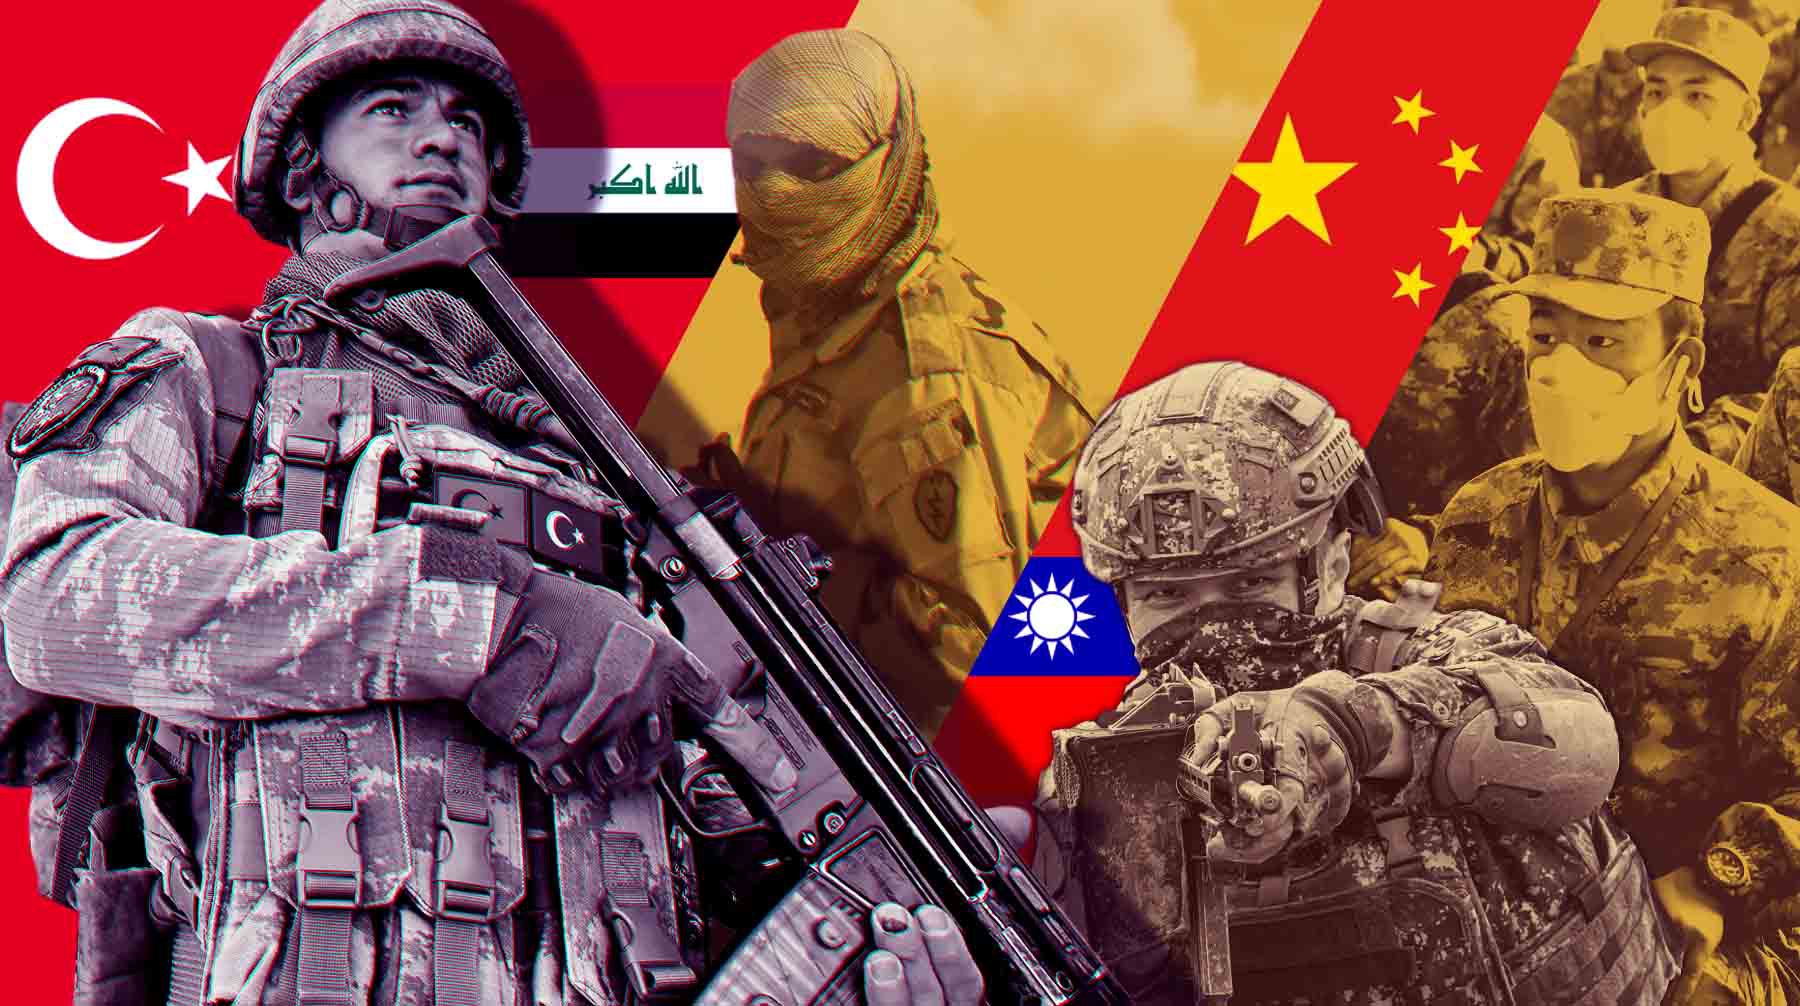 Dailystorm - Турция проводит спецоперацию в Ираке, а Китай трясет оружием над Тайванем: политологи оценили опасность новых конфликтов